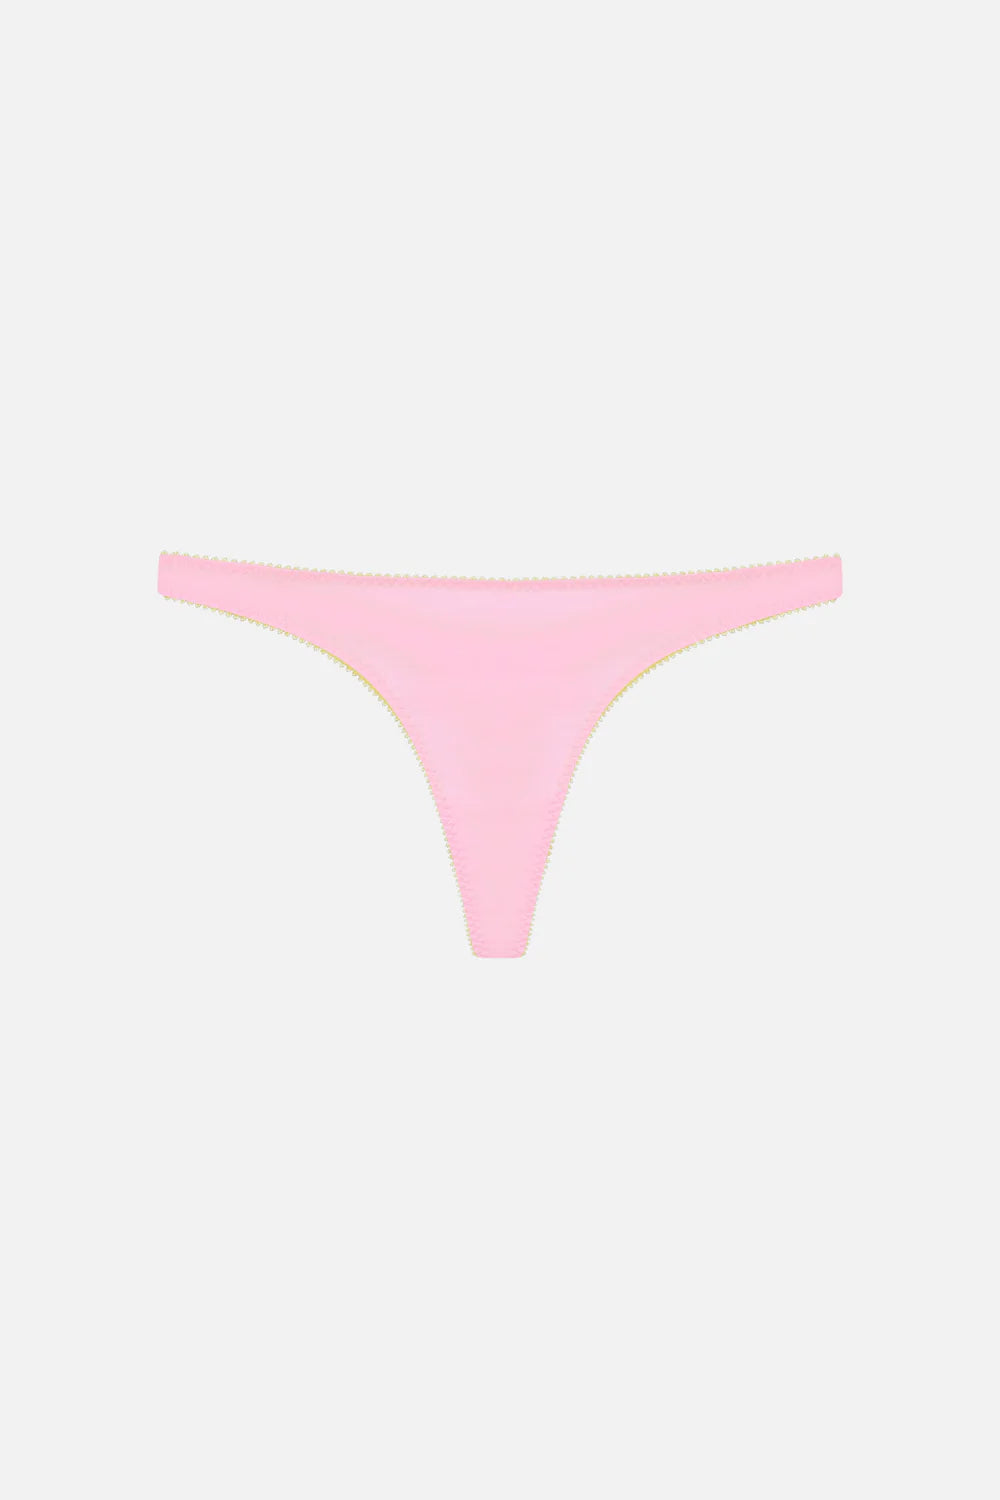 Victoria's Secret, Intimates & Sleepwear, Blush Pink G String